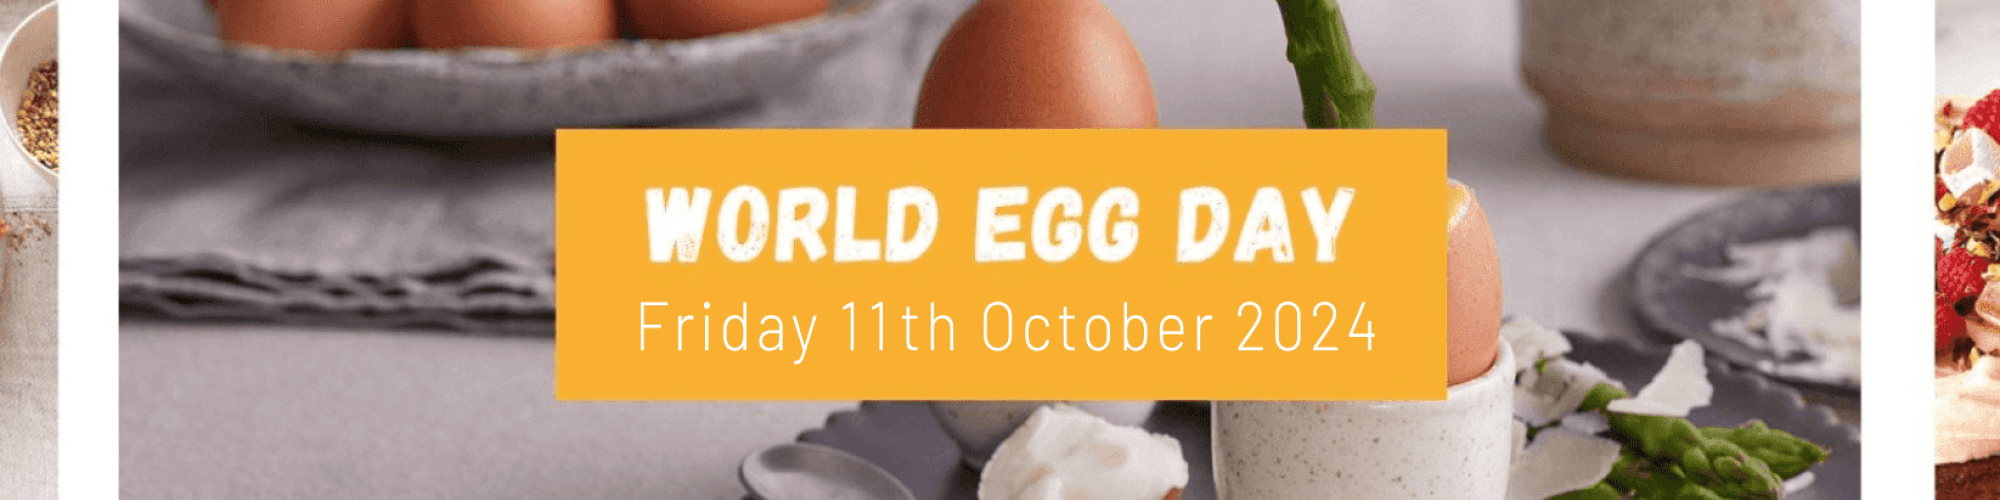 19 01 24 World Egg Day Banner